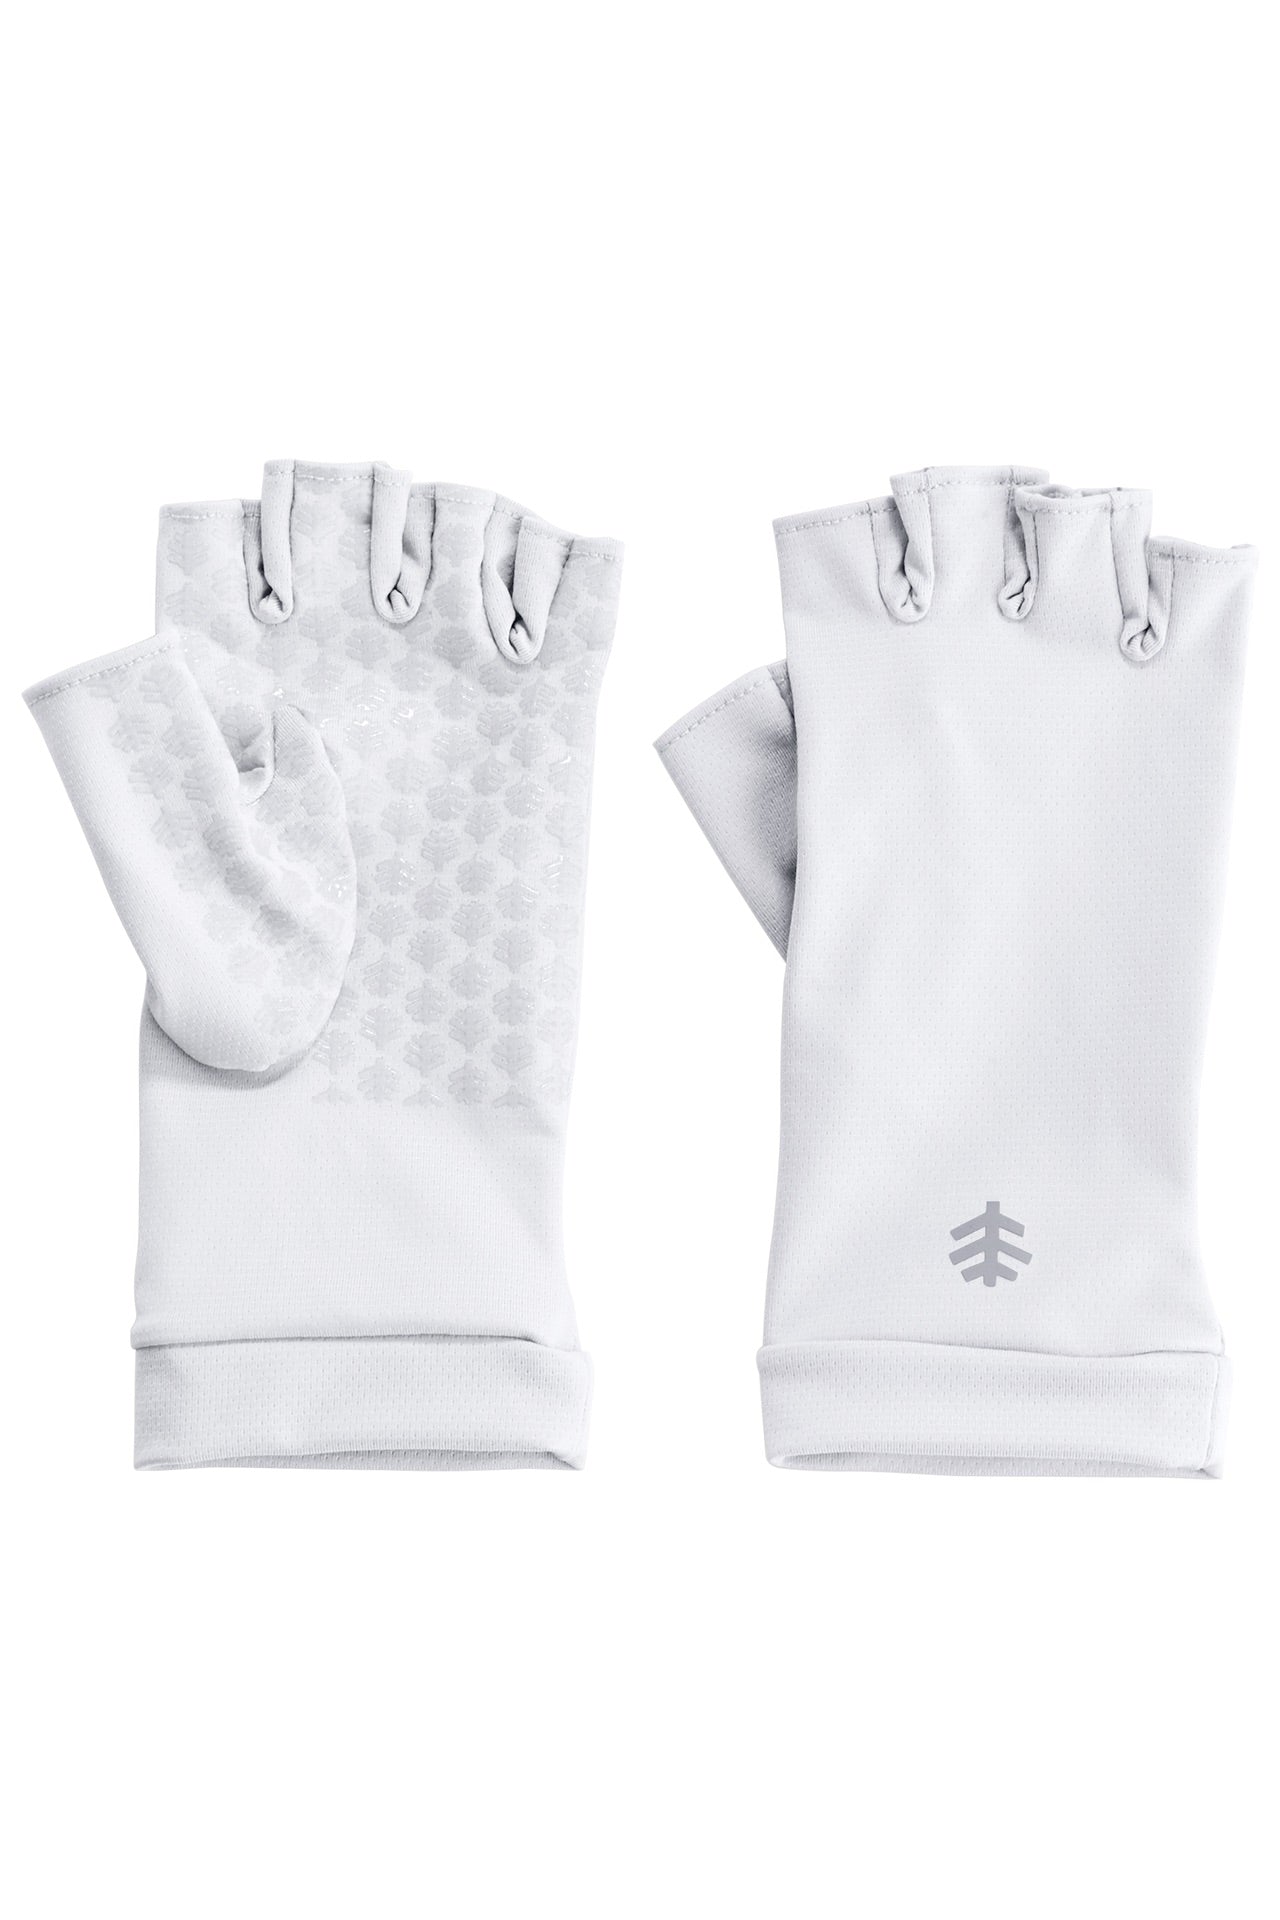 Jutao + UV Gloves for Manicure for Sun Protection, Fingerless